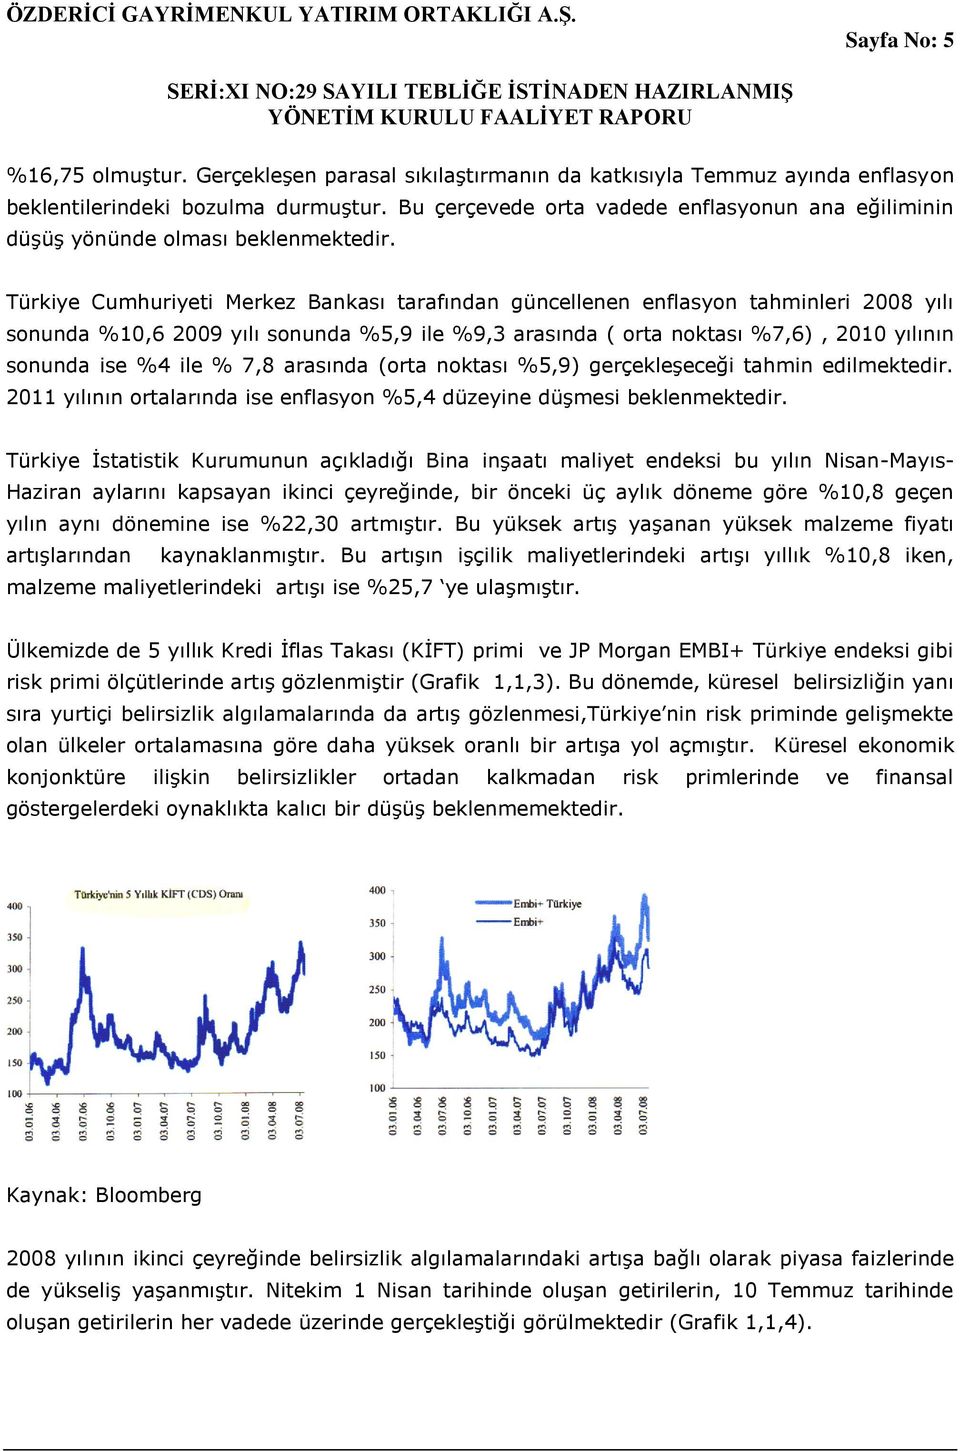 Türkiye Cumhuriyeti Merkez Bankası tarafından güncellenen enflasyon tahminleri 2008 yılı sonunda %10,6 2009 yılı sonunda %5,9 ile %9,3 arasında ( orta noktası %7,6), 2010 yılının sonunda ise %4 ile %